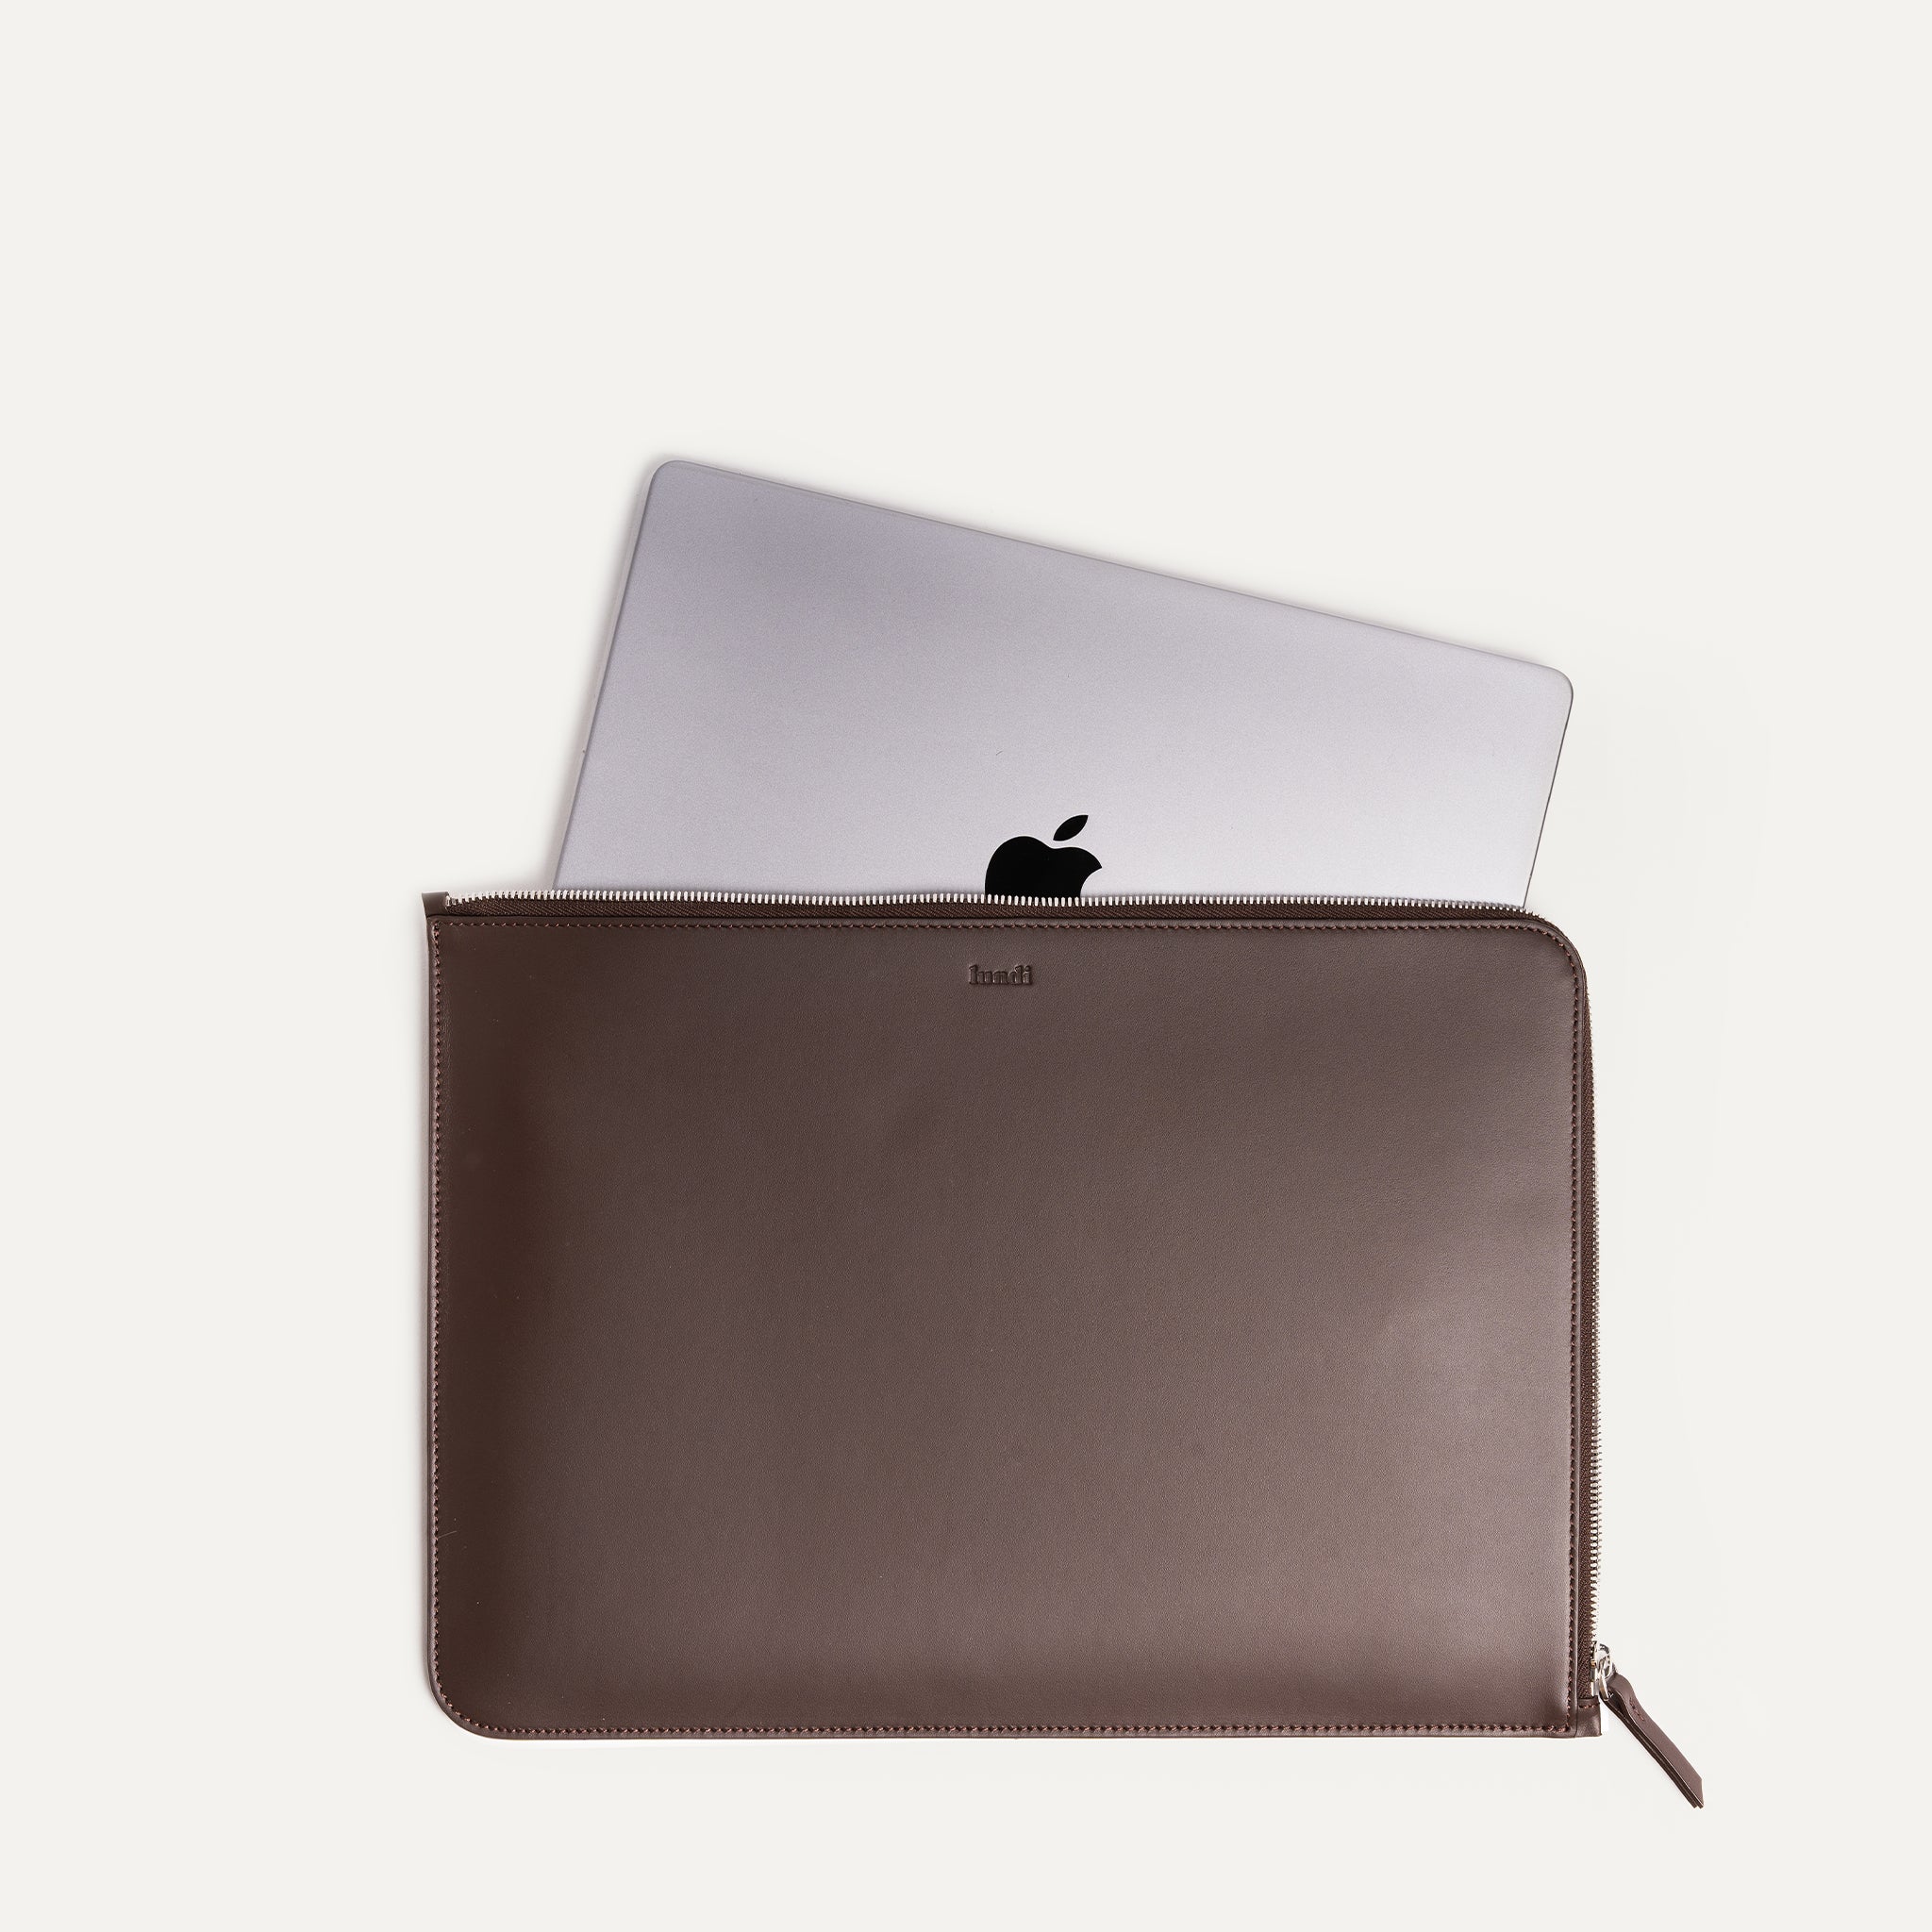 Fabriquée en cuir de haute qualité, cette pochette d'ordinateur portable en cuir marron offre une protection robuste pour votre ordinateur portable. Avec son design épuré, cette pochette en cuir marron est un choix parfait pour ceux qui préfèrent un style minimaliste.